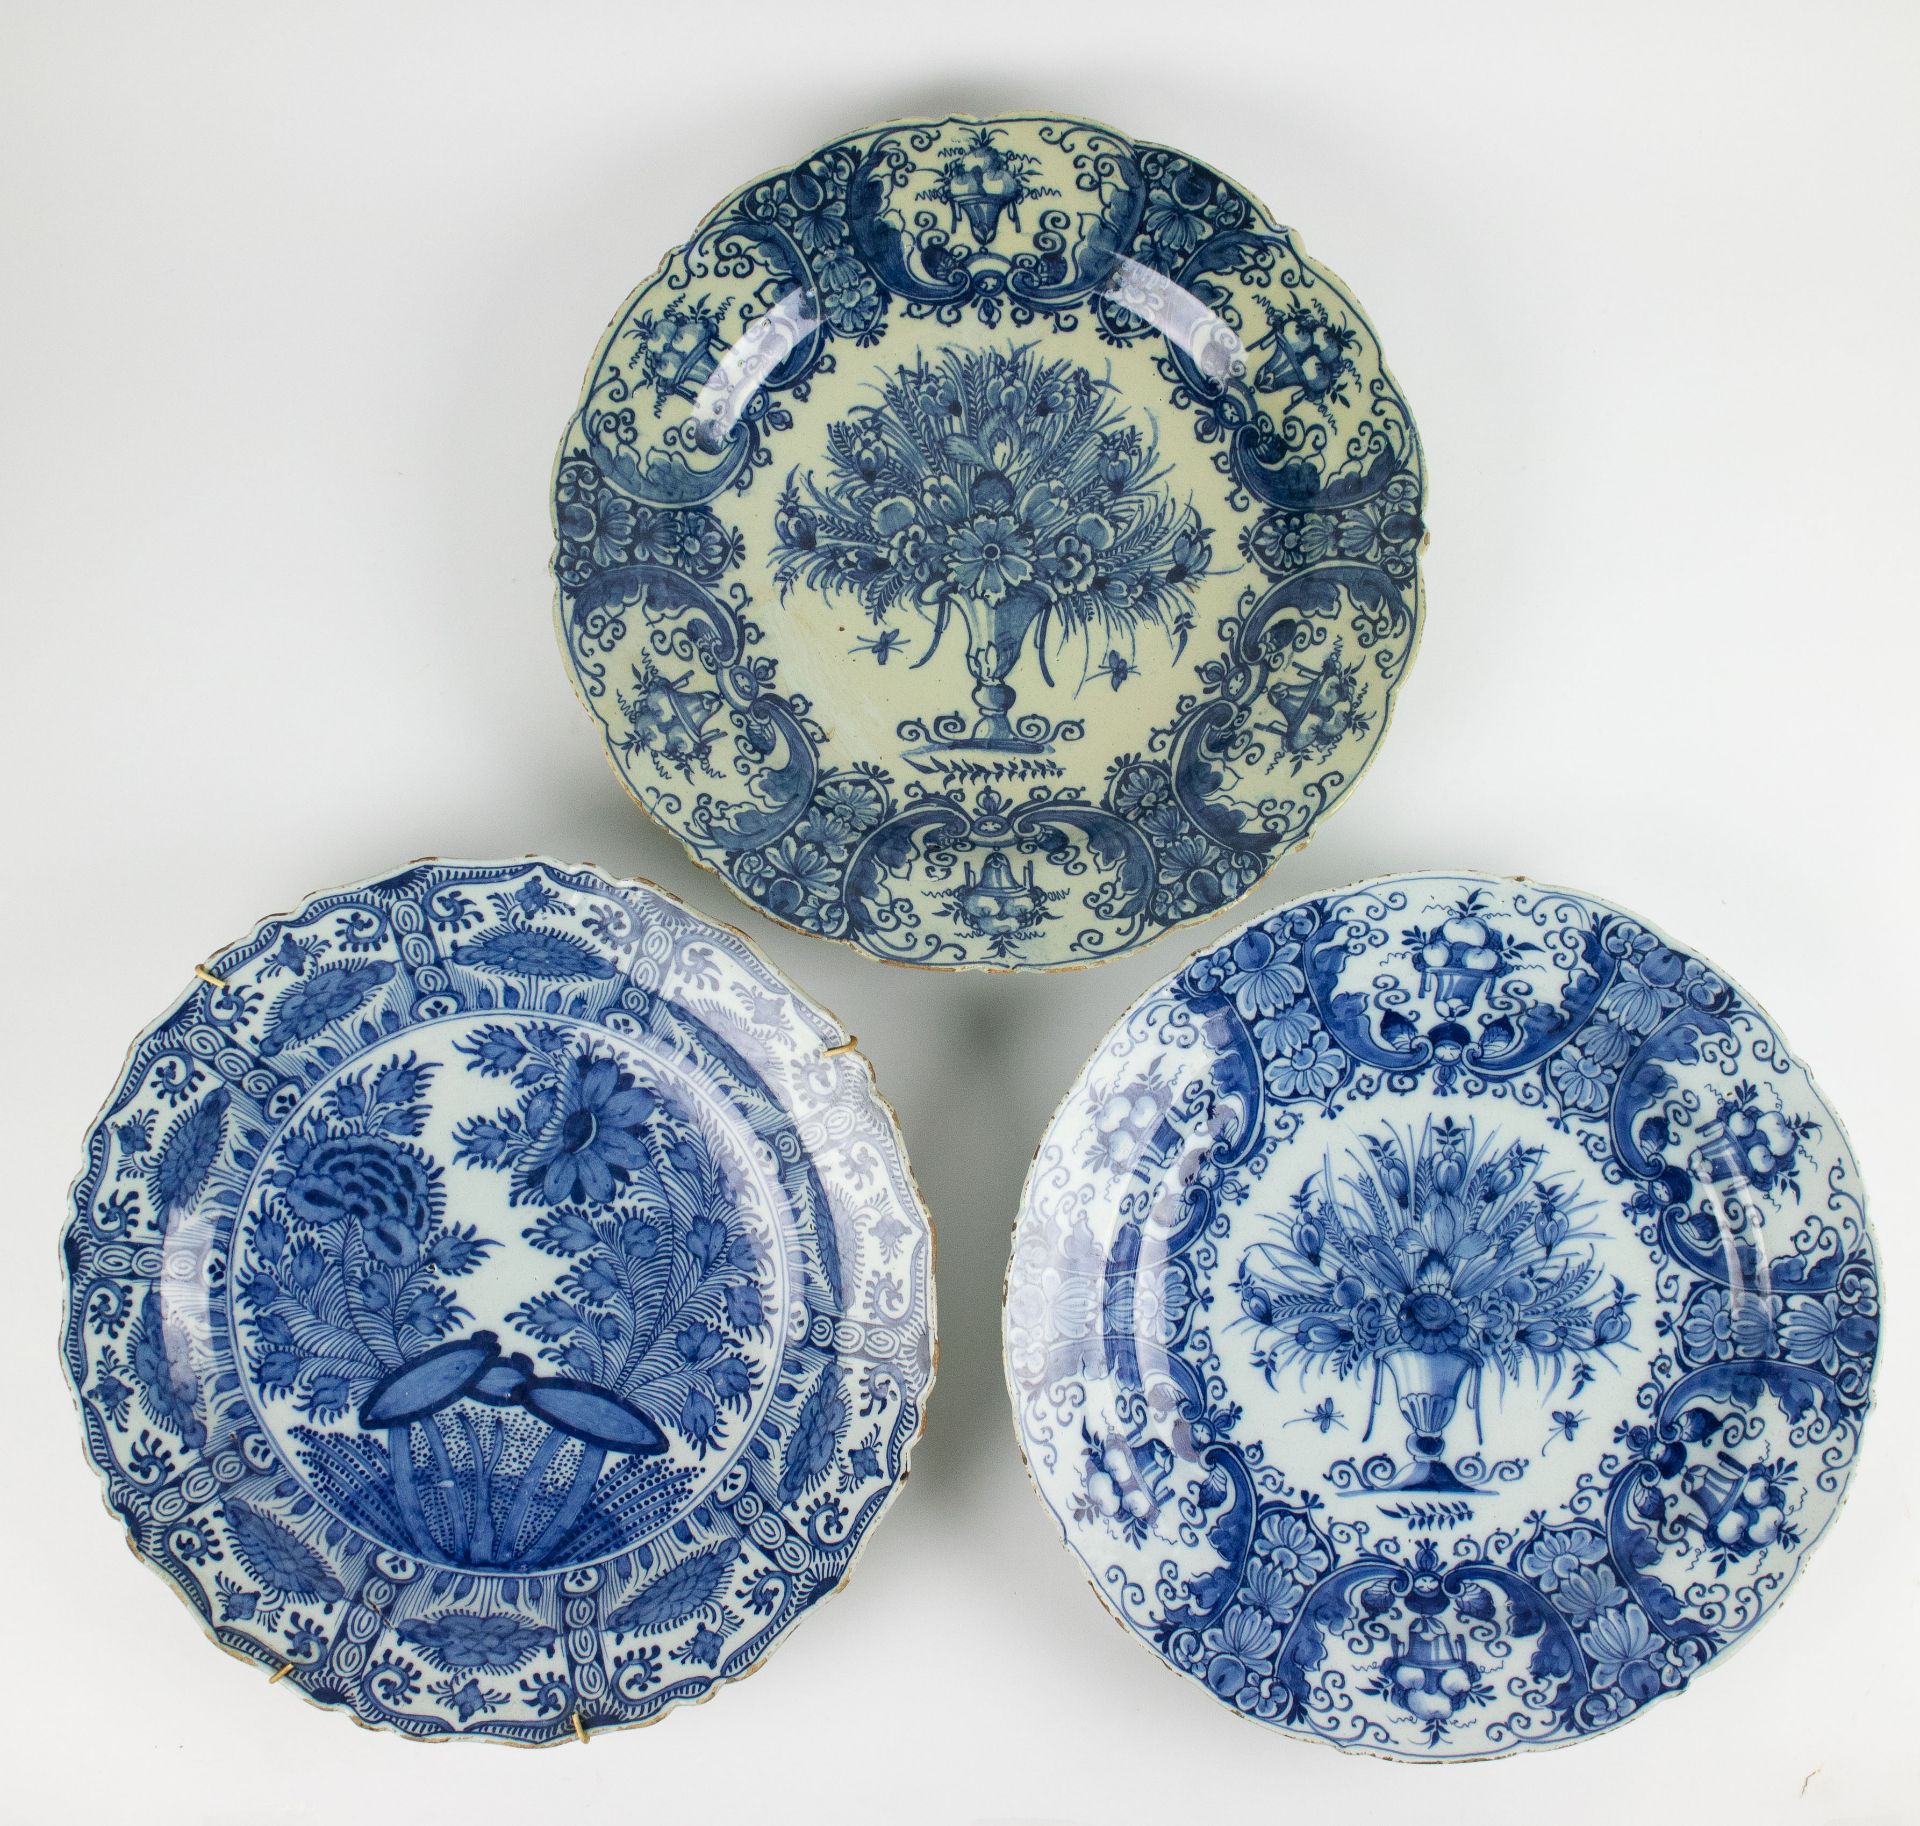 3 Delft plates 17th/18th century